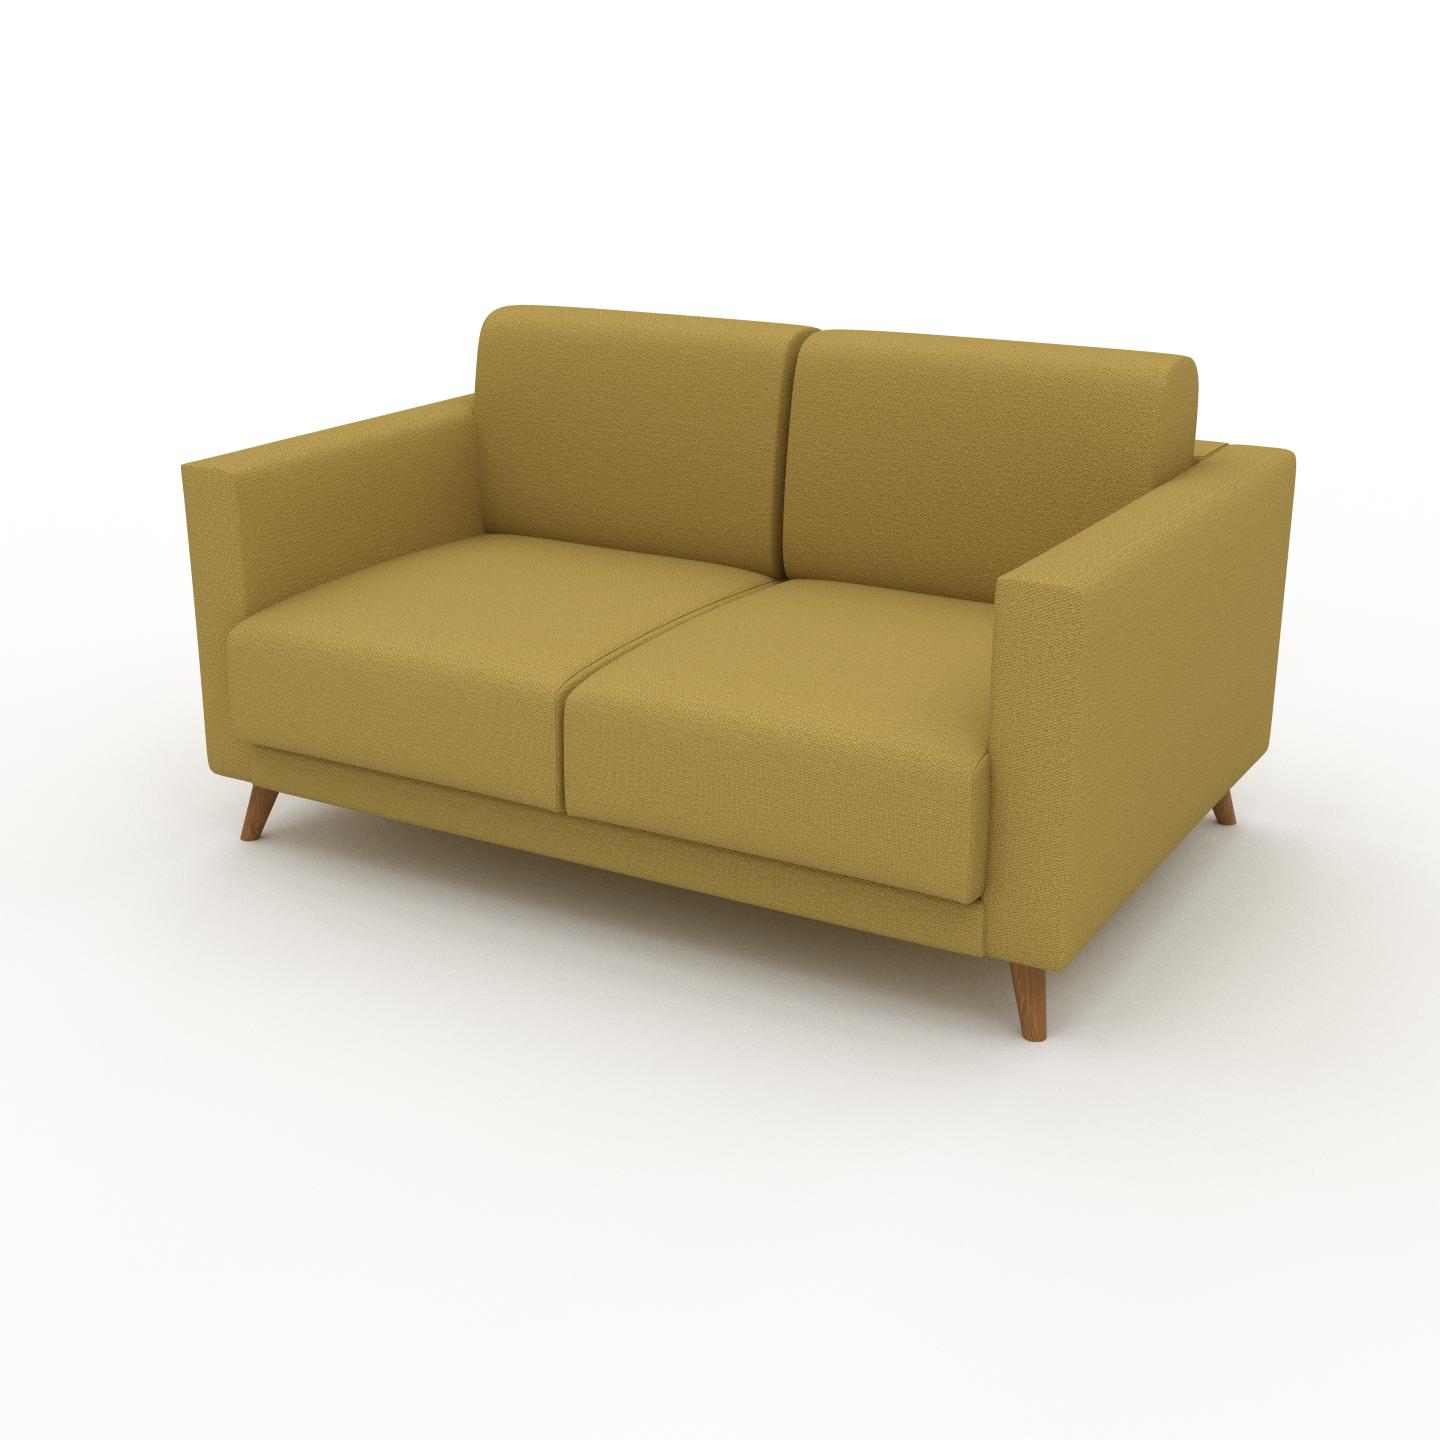 MYCS Sofa Senfgelb - Moderne Designer-Couch: Hochwertige Qualität, einzigartiges Design - 145 x 75 x 98 cm, Komplett anpassbar